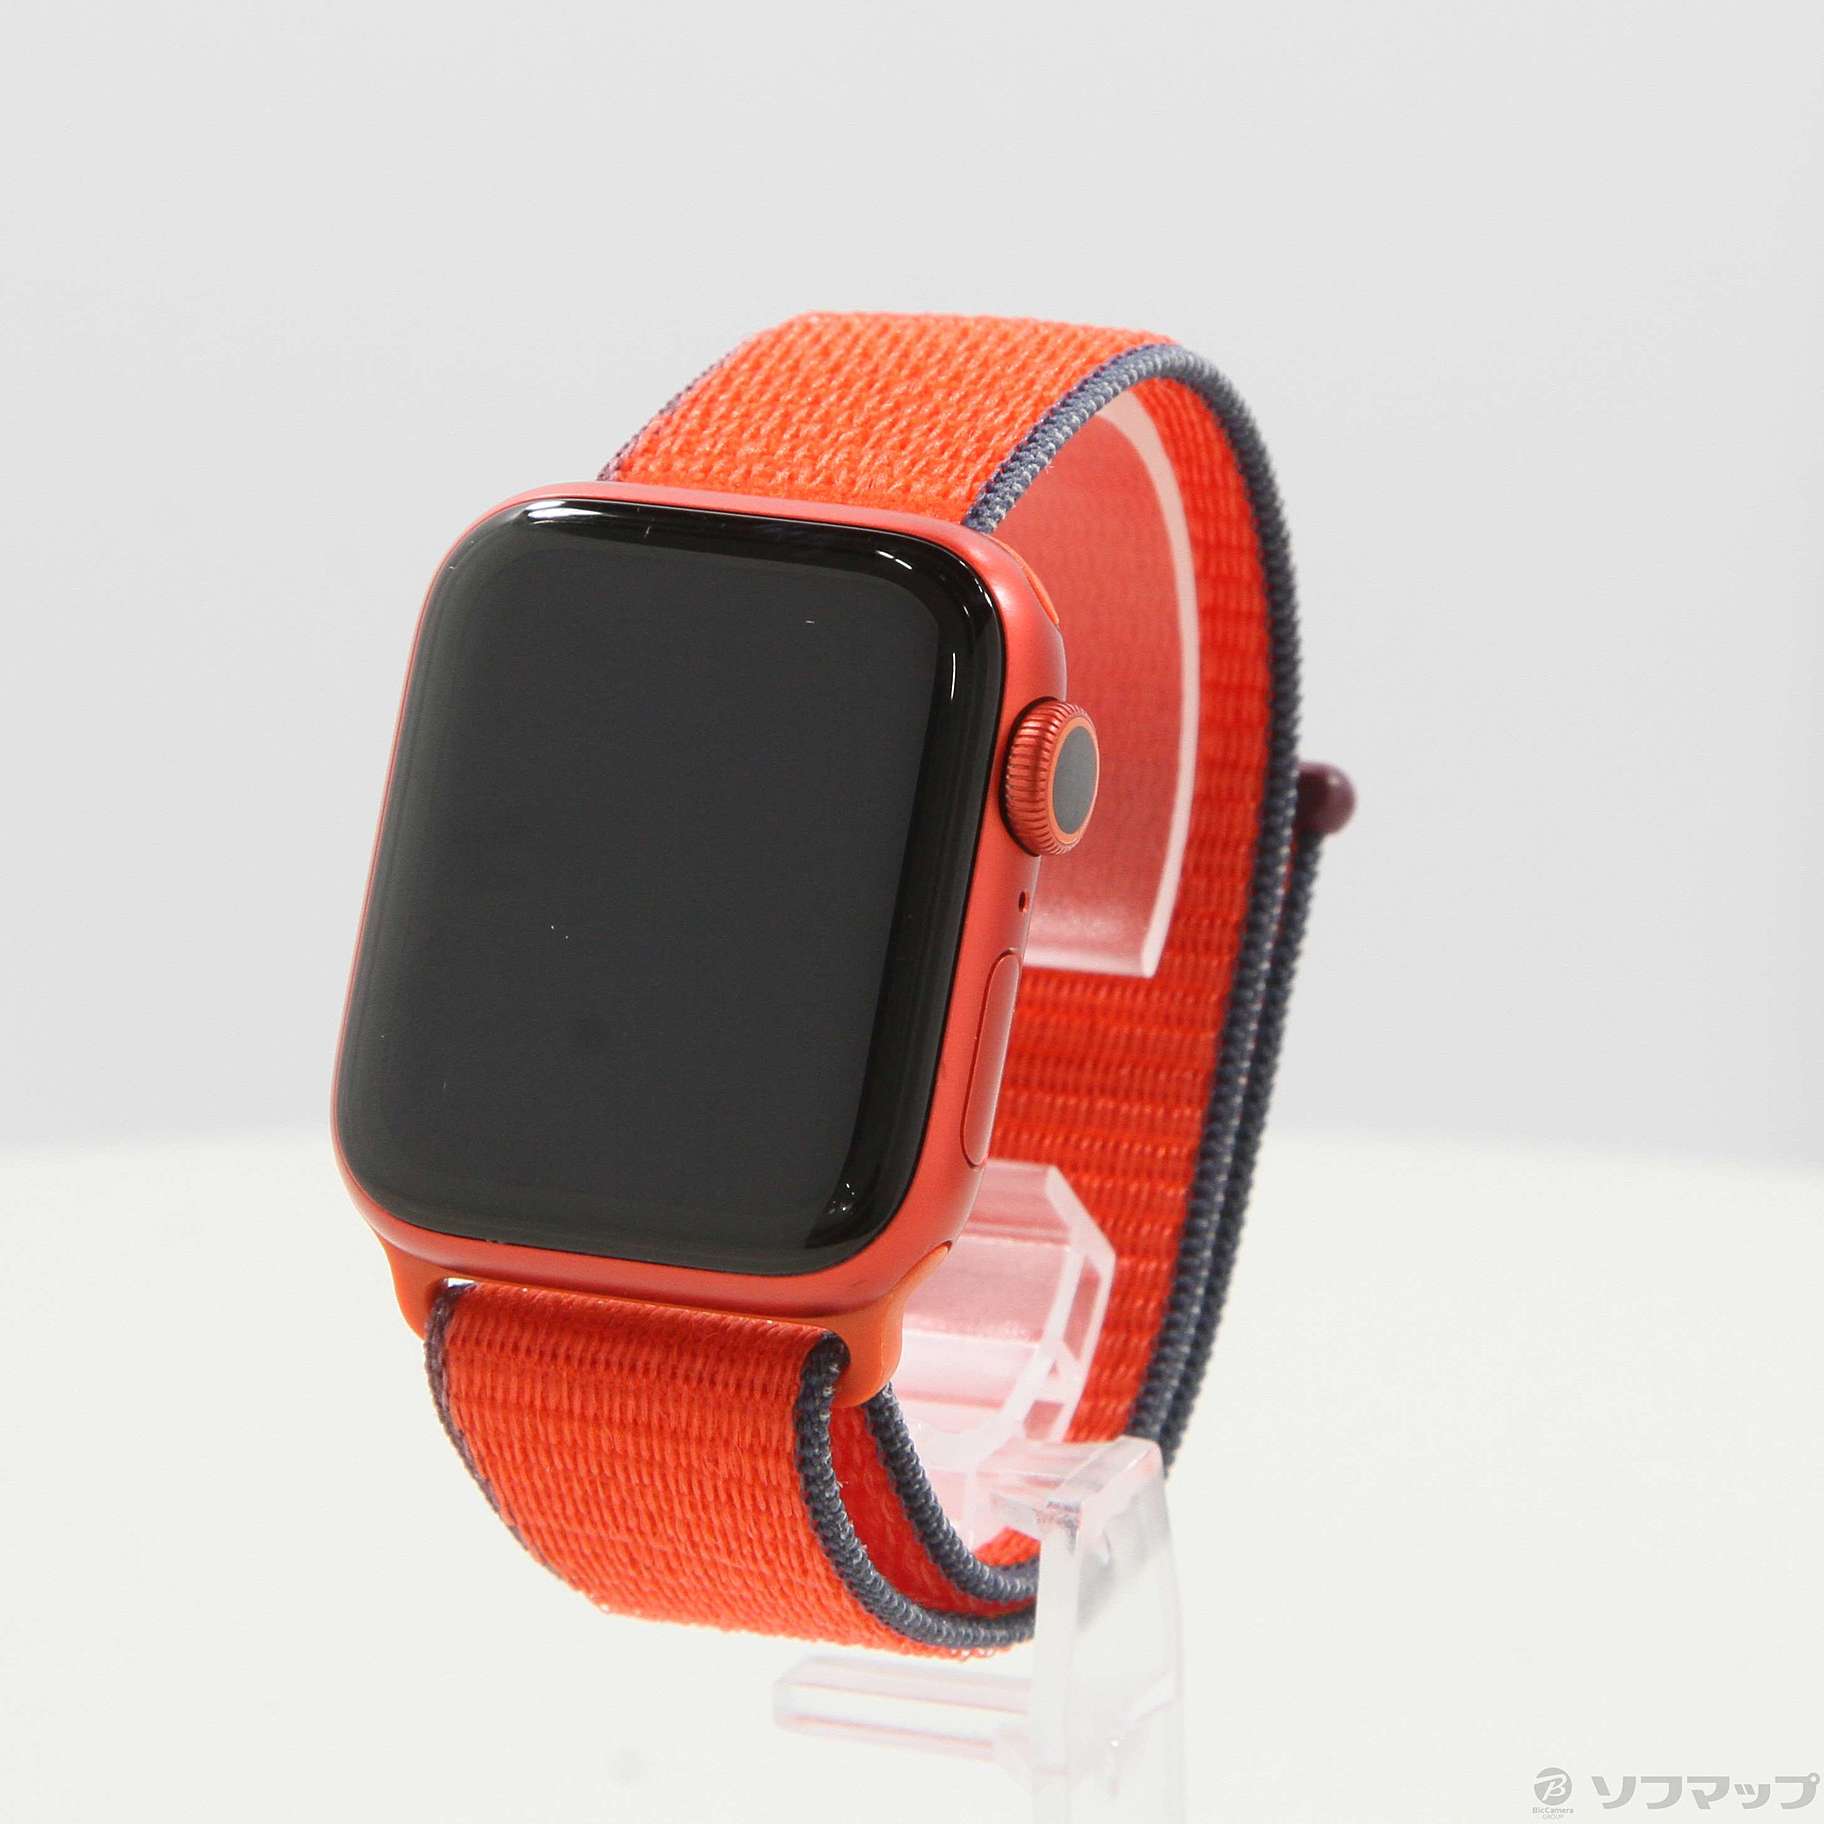 海外販売中古 Apple watch 6 Product Red GPS アップルウォッチ6 44mm アルミニウムケース 傷小 バッテリー良好 スマートウォッチ本体